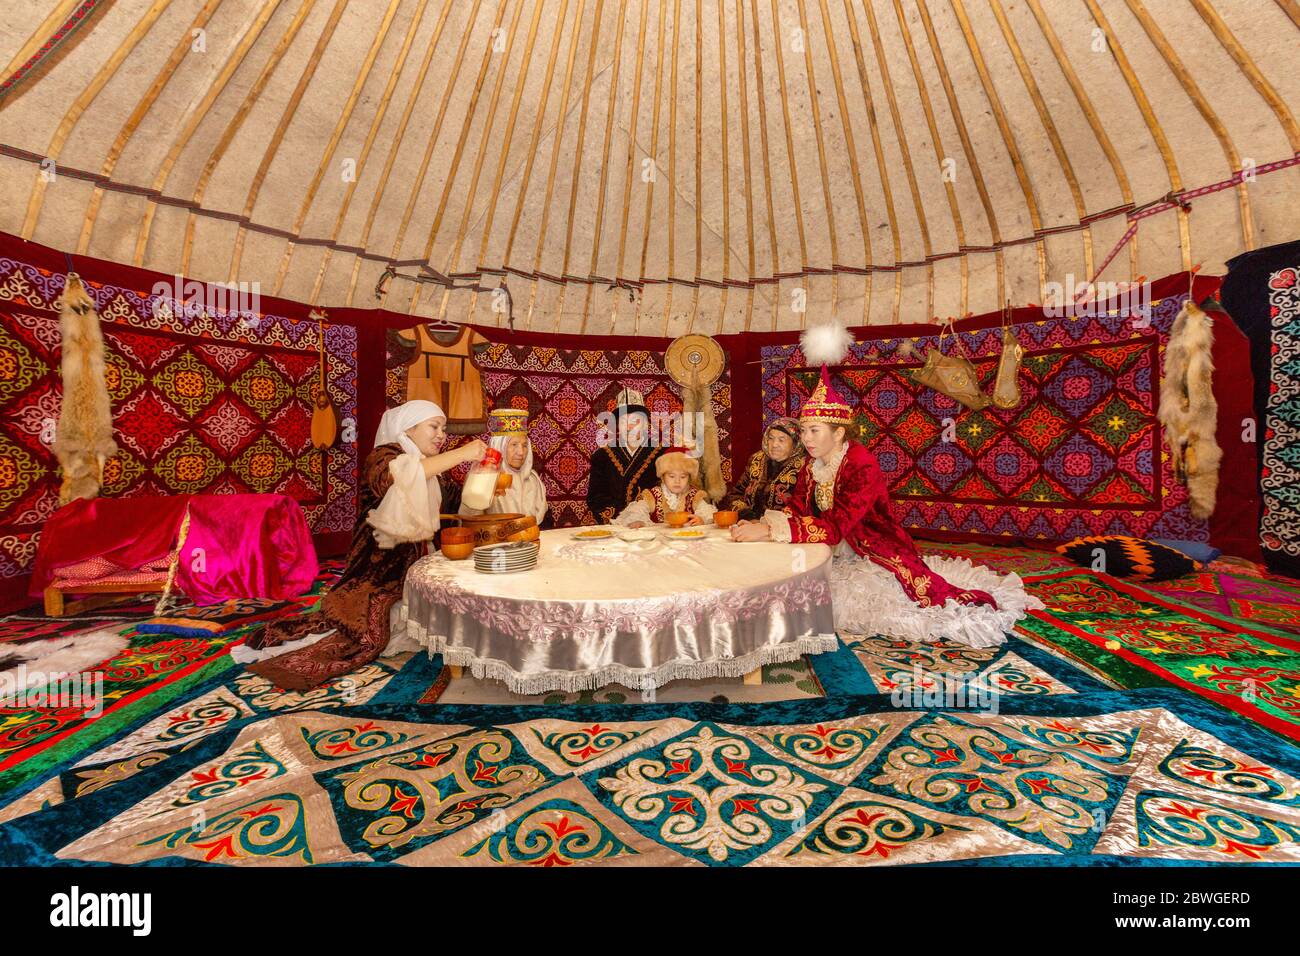 Kazako in costumi tradizionali in una tenda nomade conosciuta come yurt, bere Kymyz, bevanda tradizionale fatta con latte di cavallo, ad Almaty, Kazakistan Foto Stock